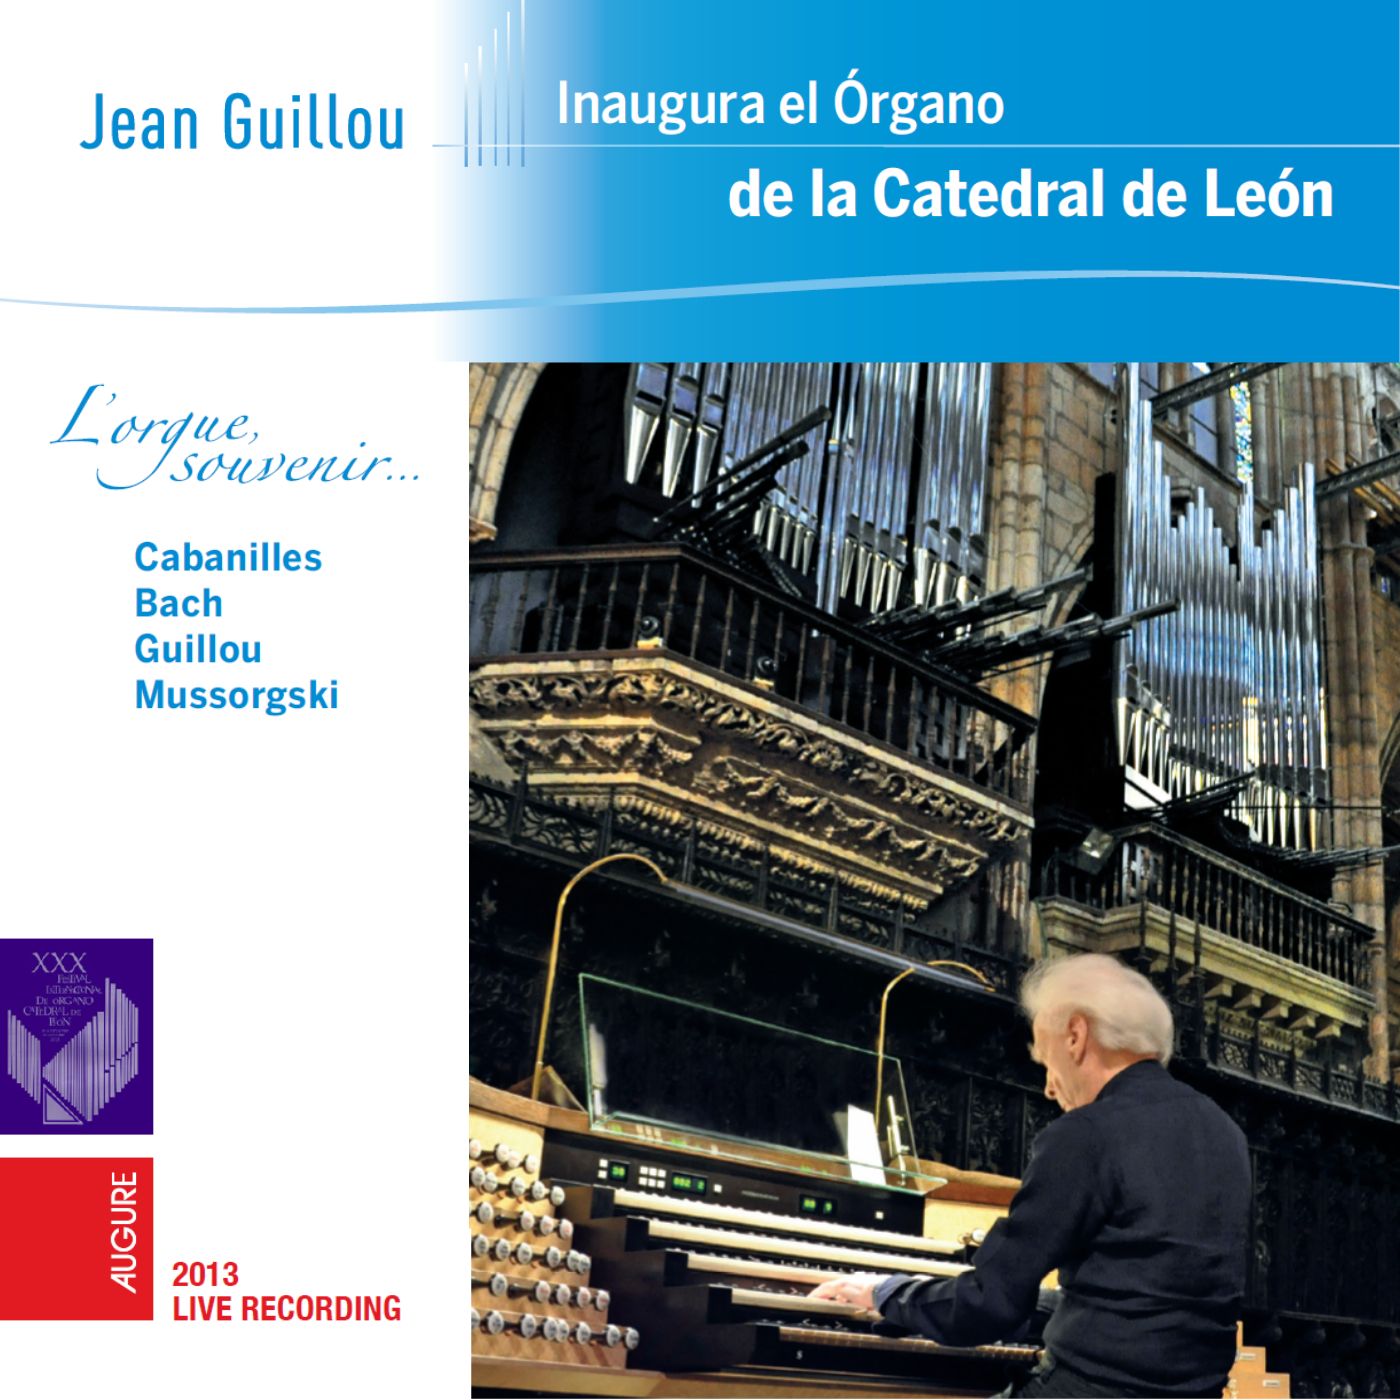 L'orgue souvenir... Cathedral de León (Live)